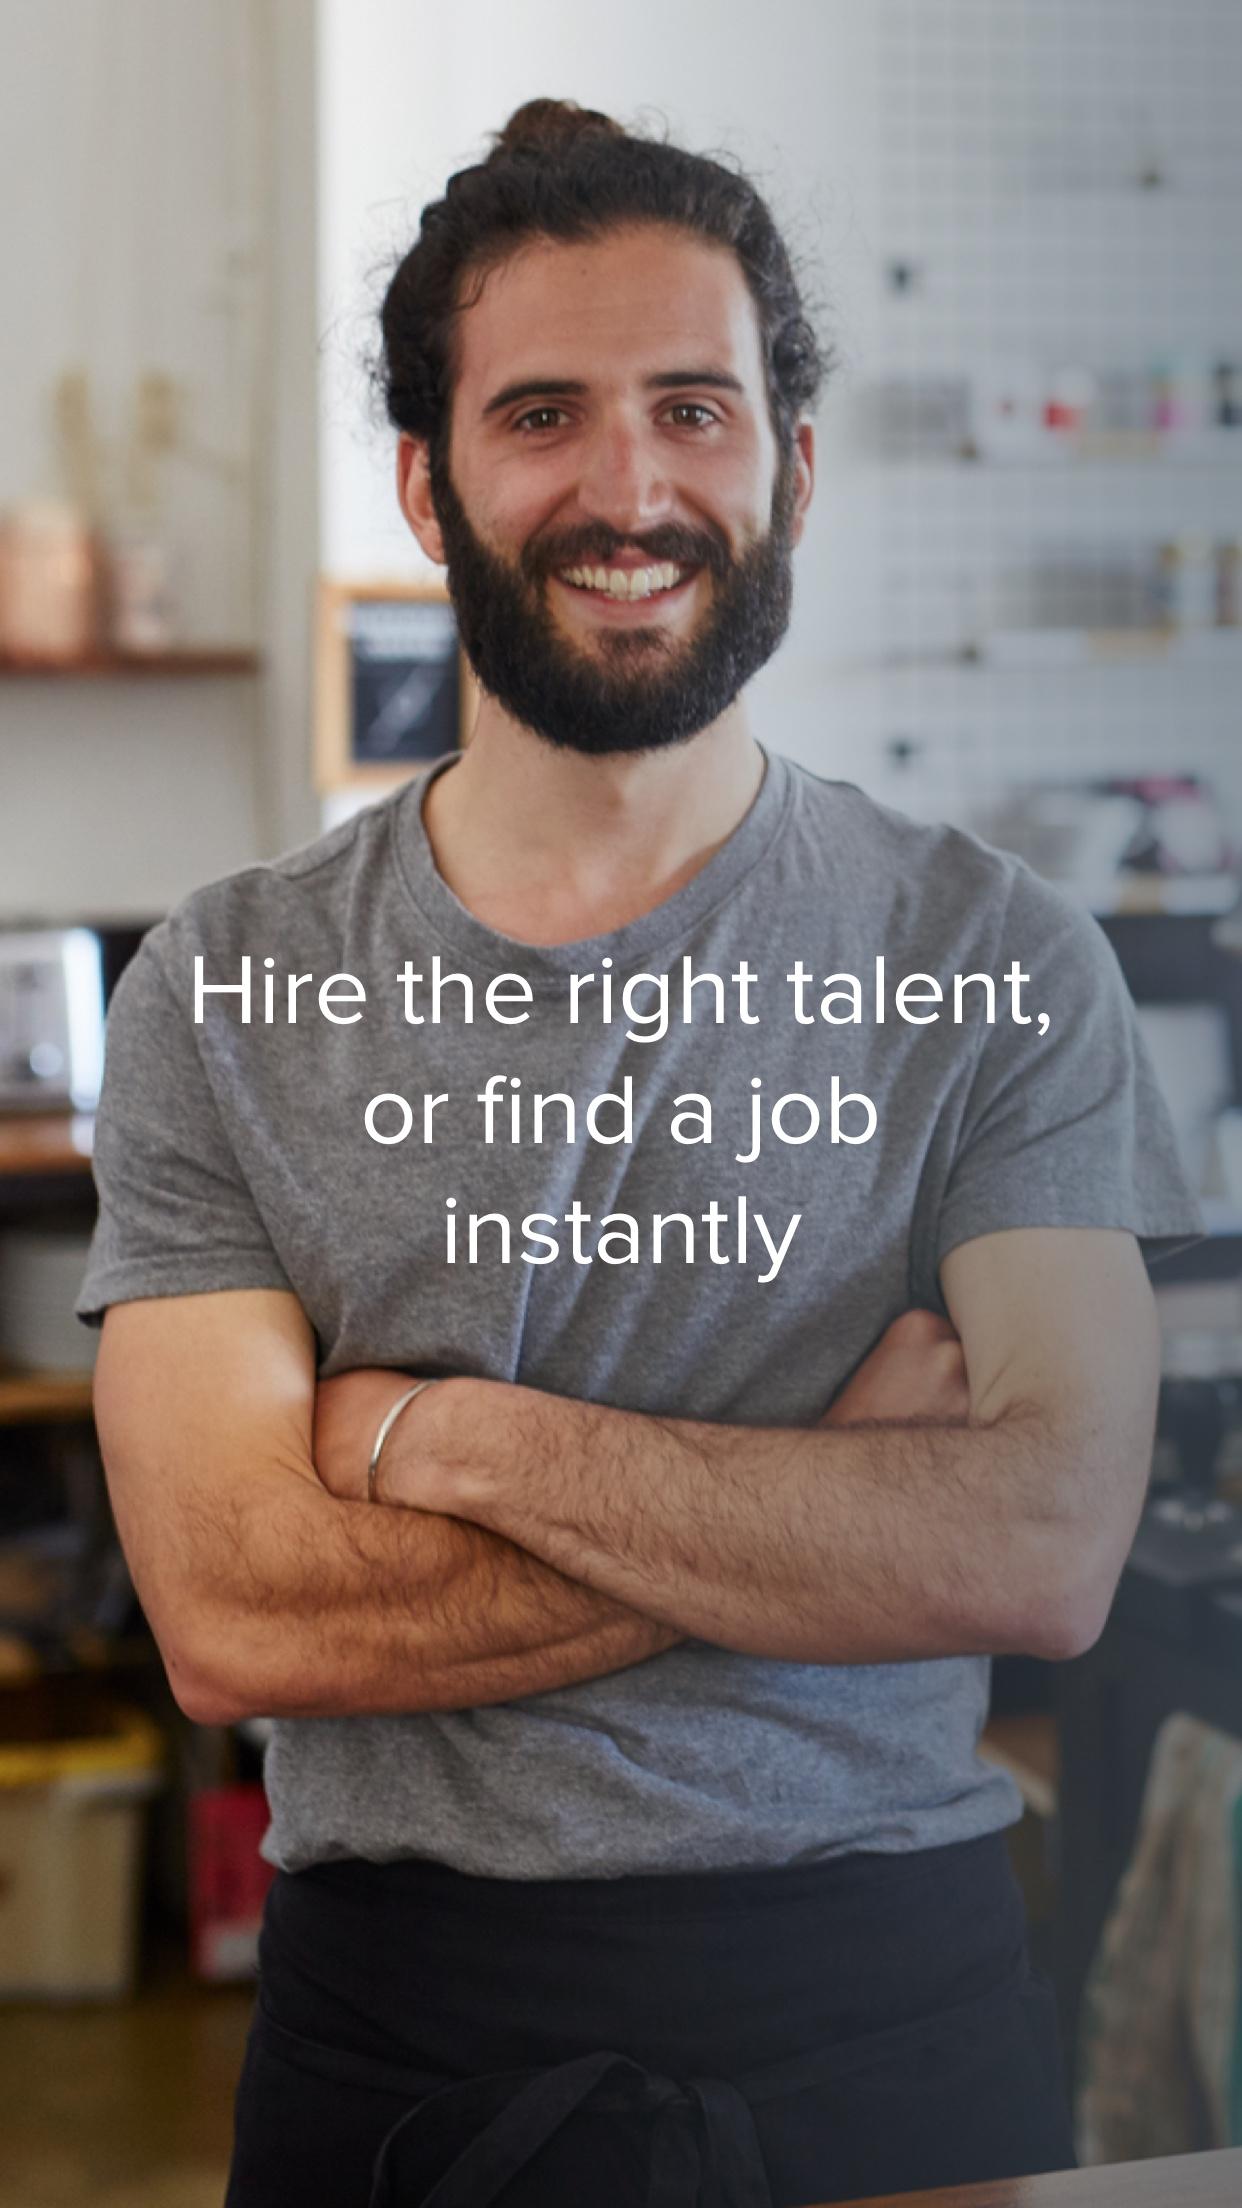 Jobandtalent Job Search & Hire screenshot #4